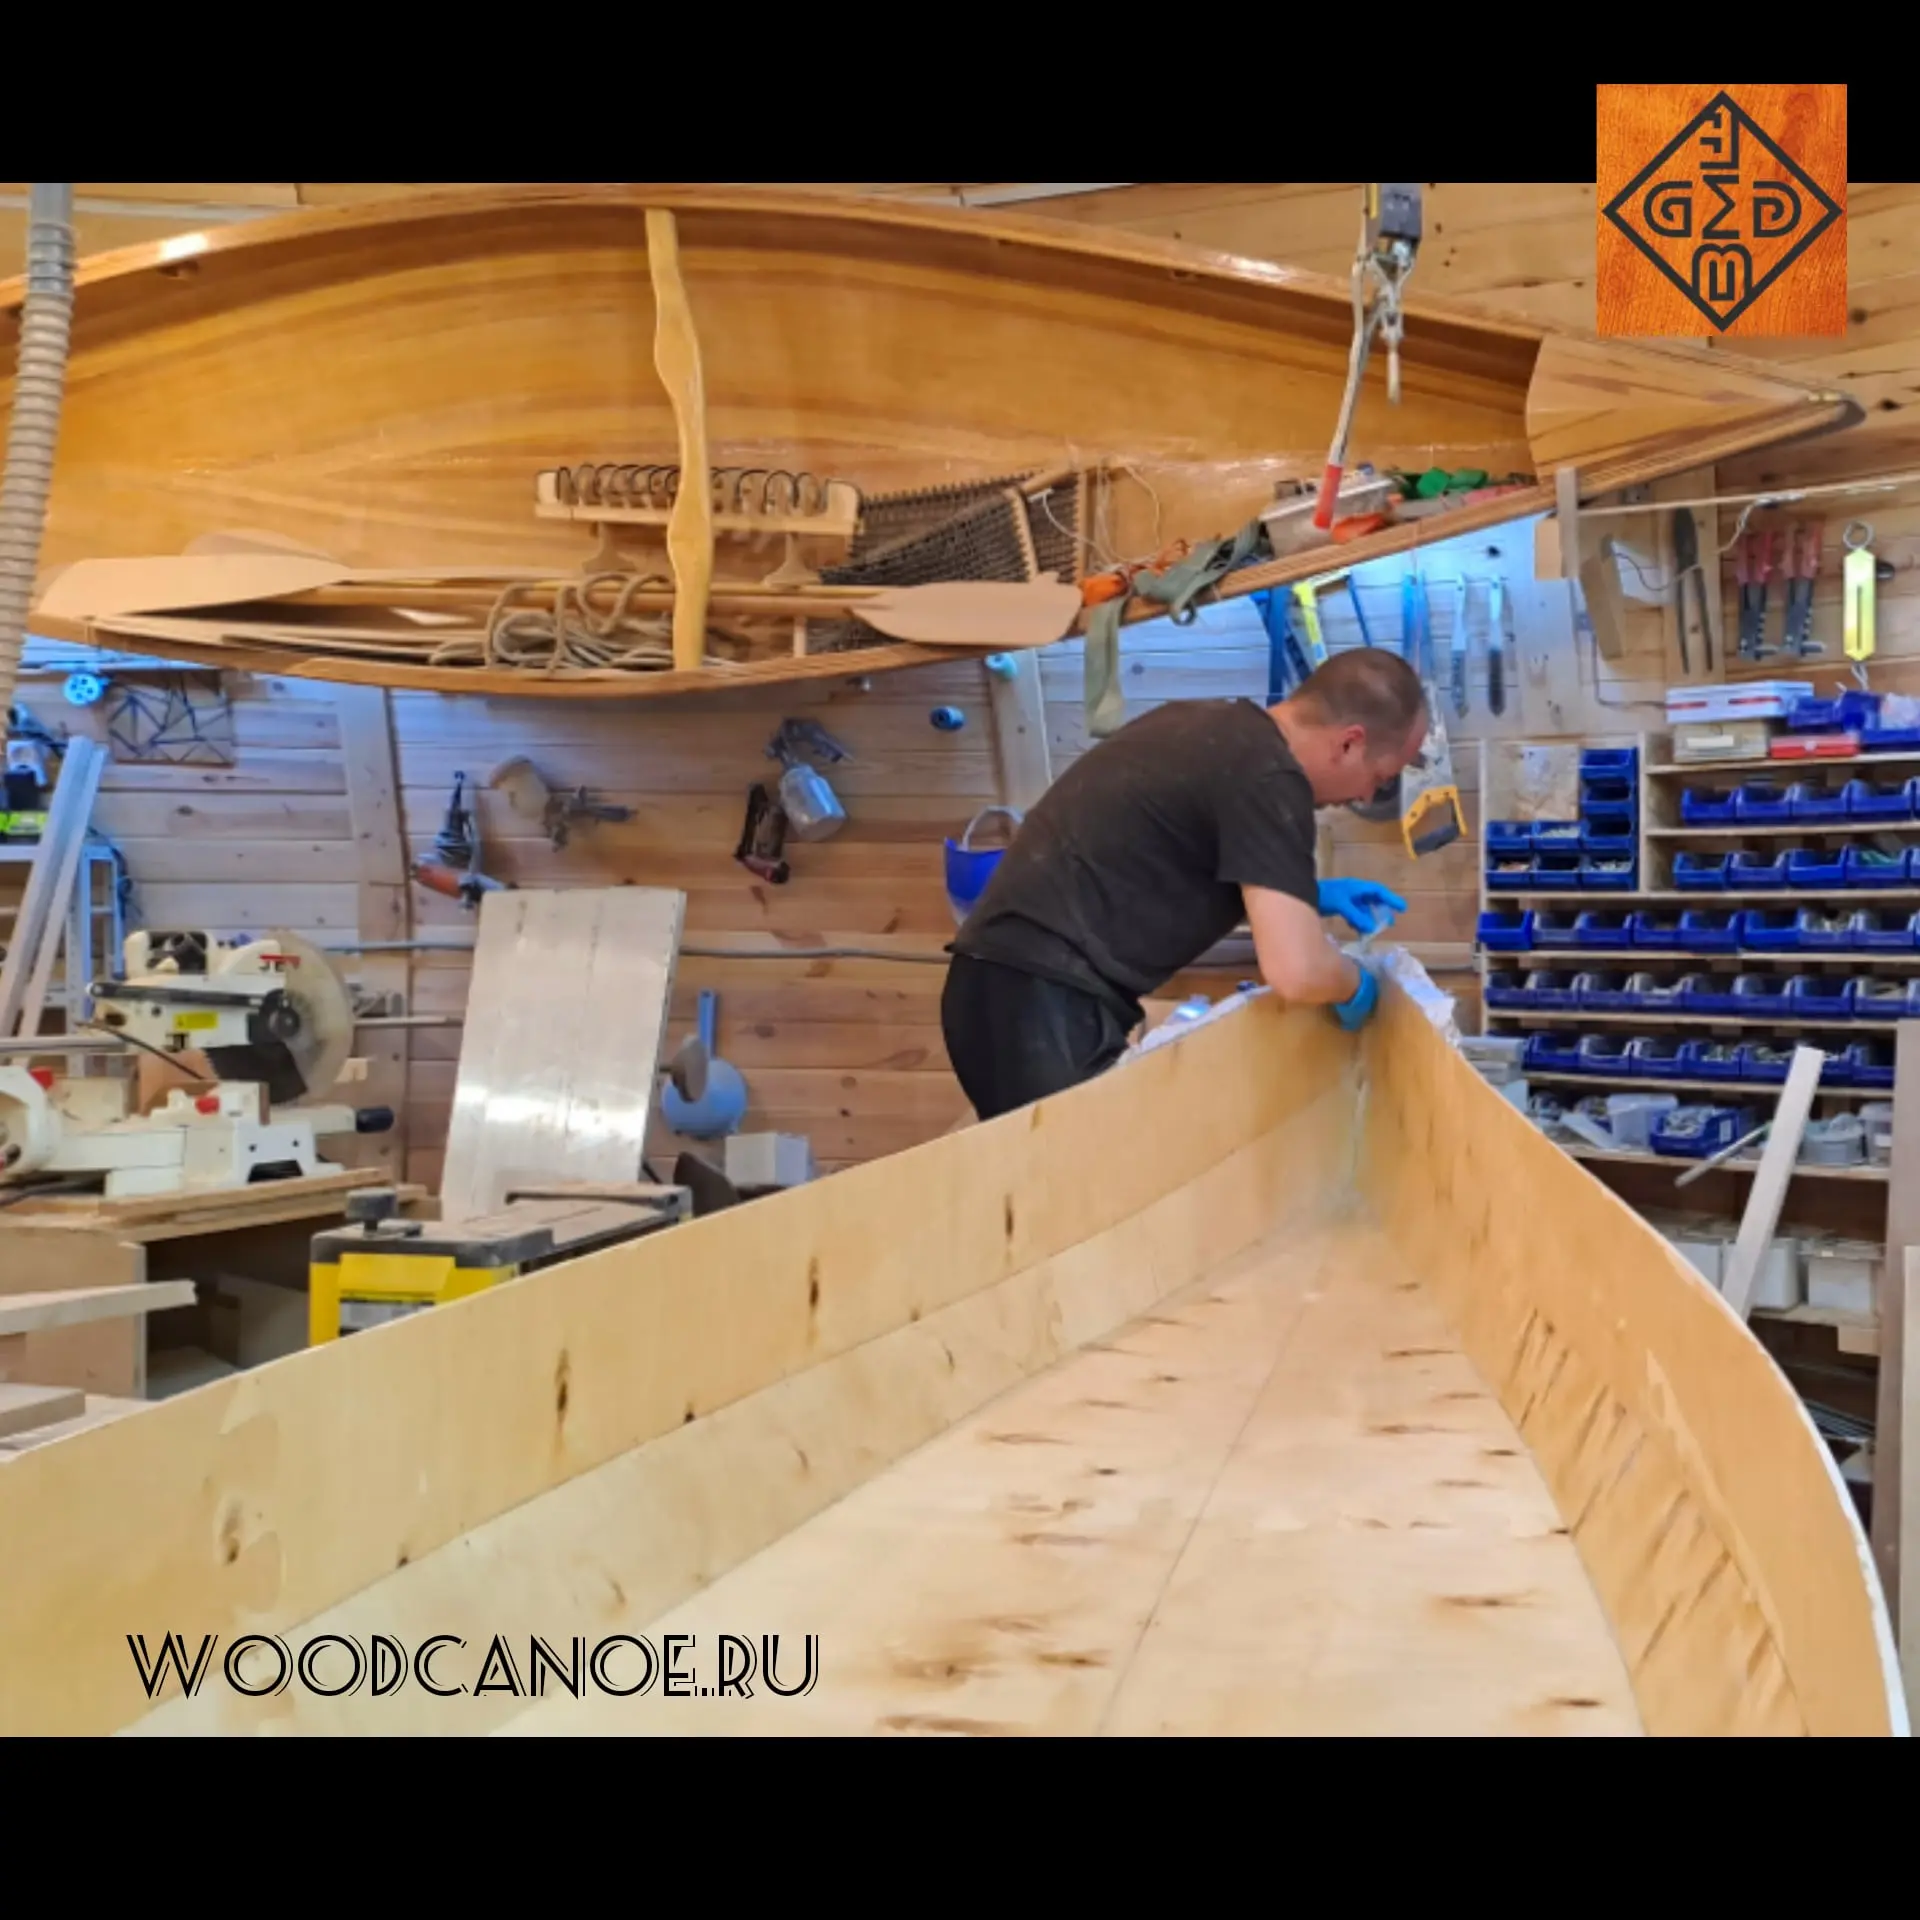 сборка корпуса деревянной лодки